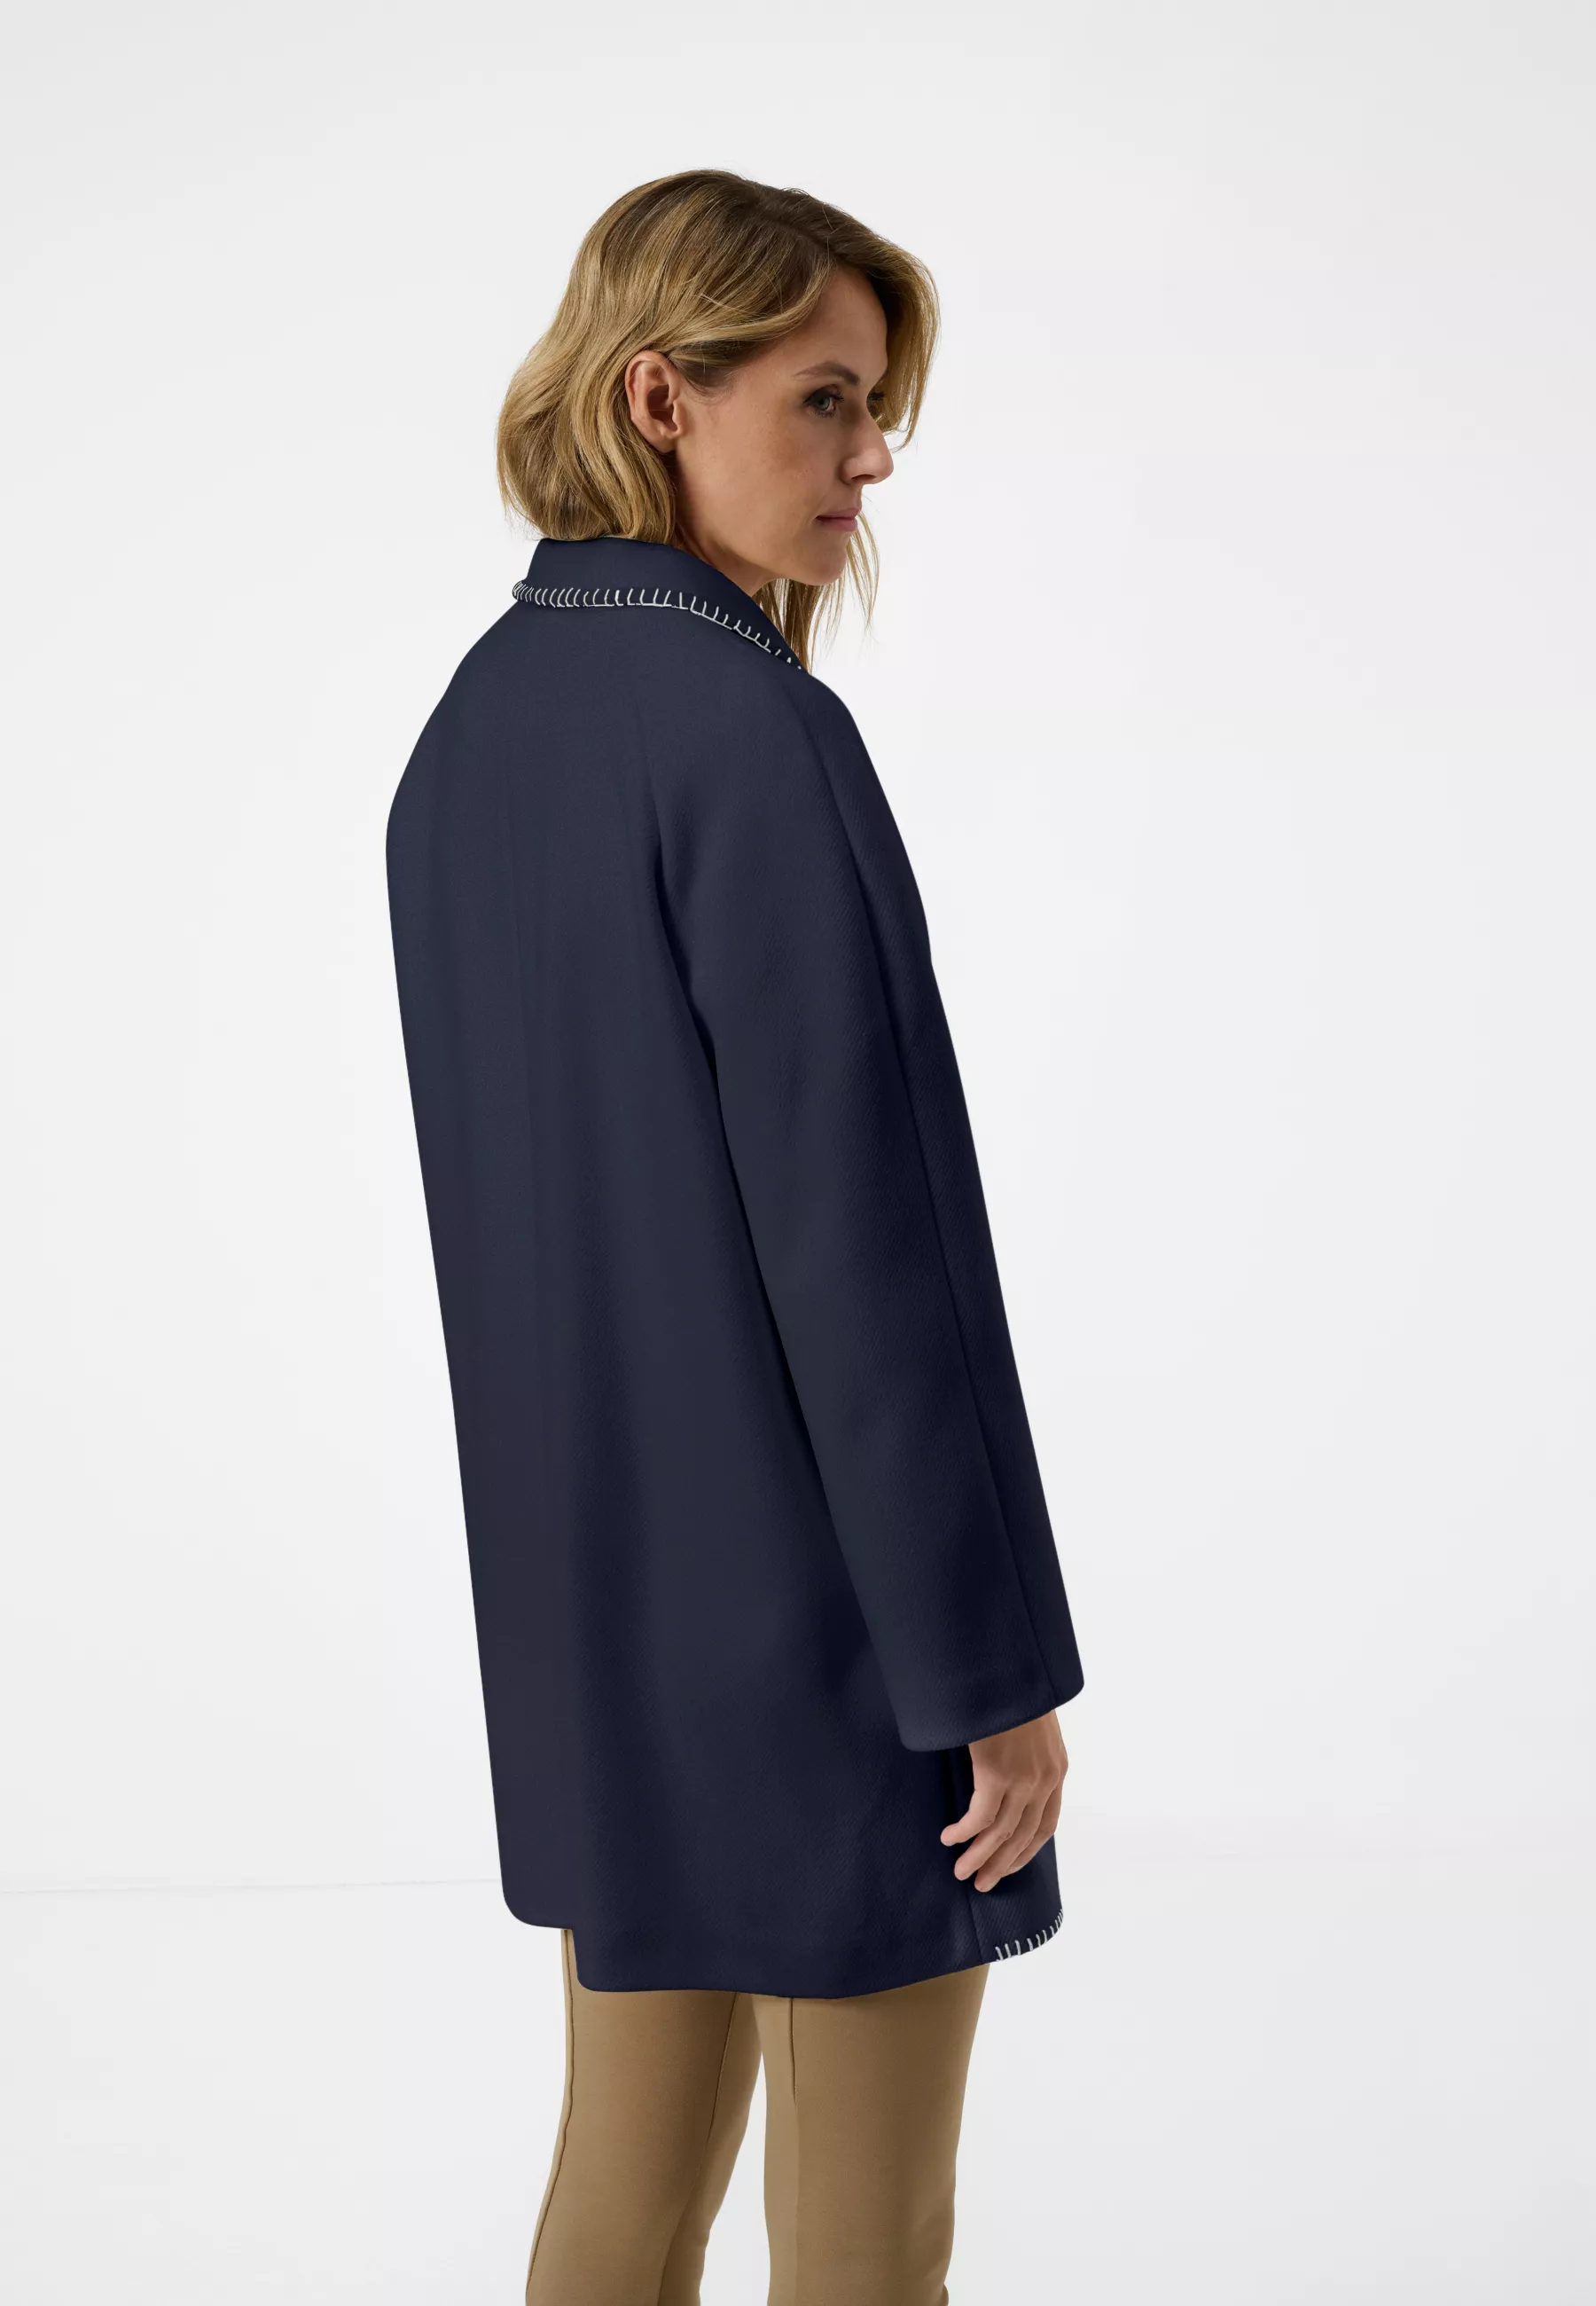 Damen Textil Mantel Silvia in Blau von Ricano, Rückansicht am Model